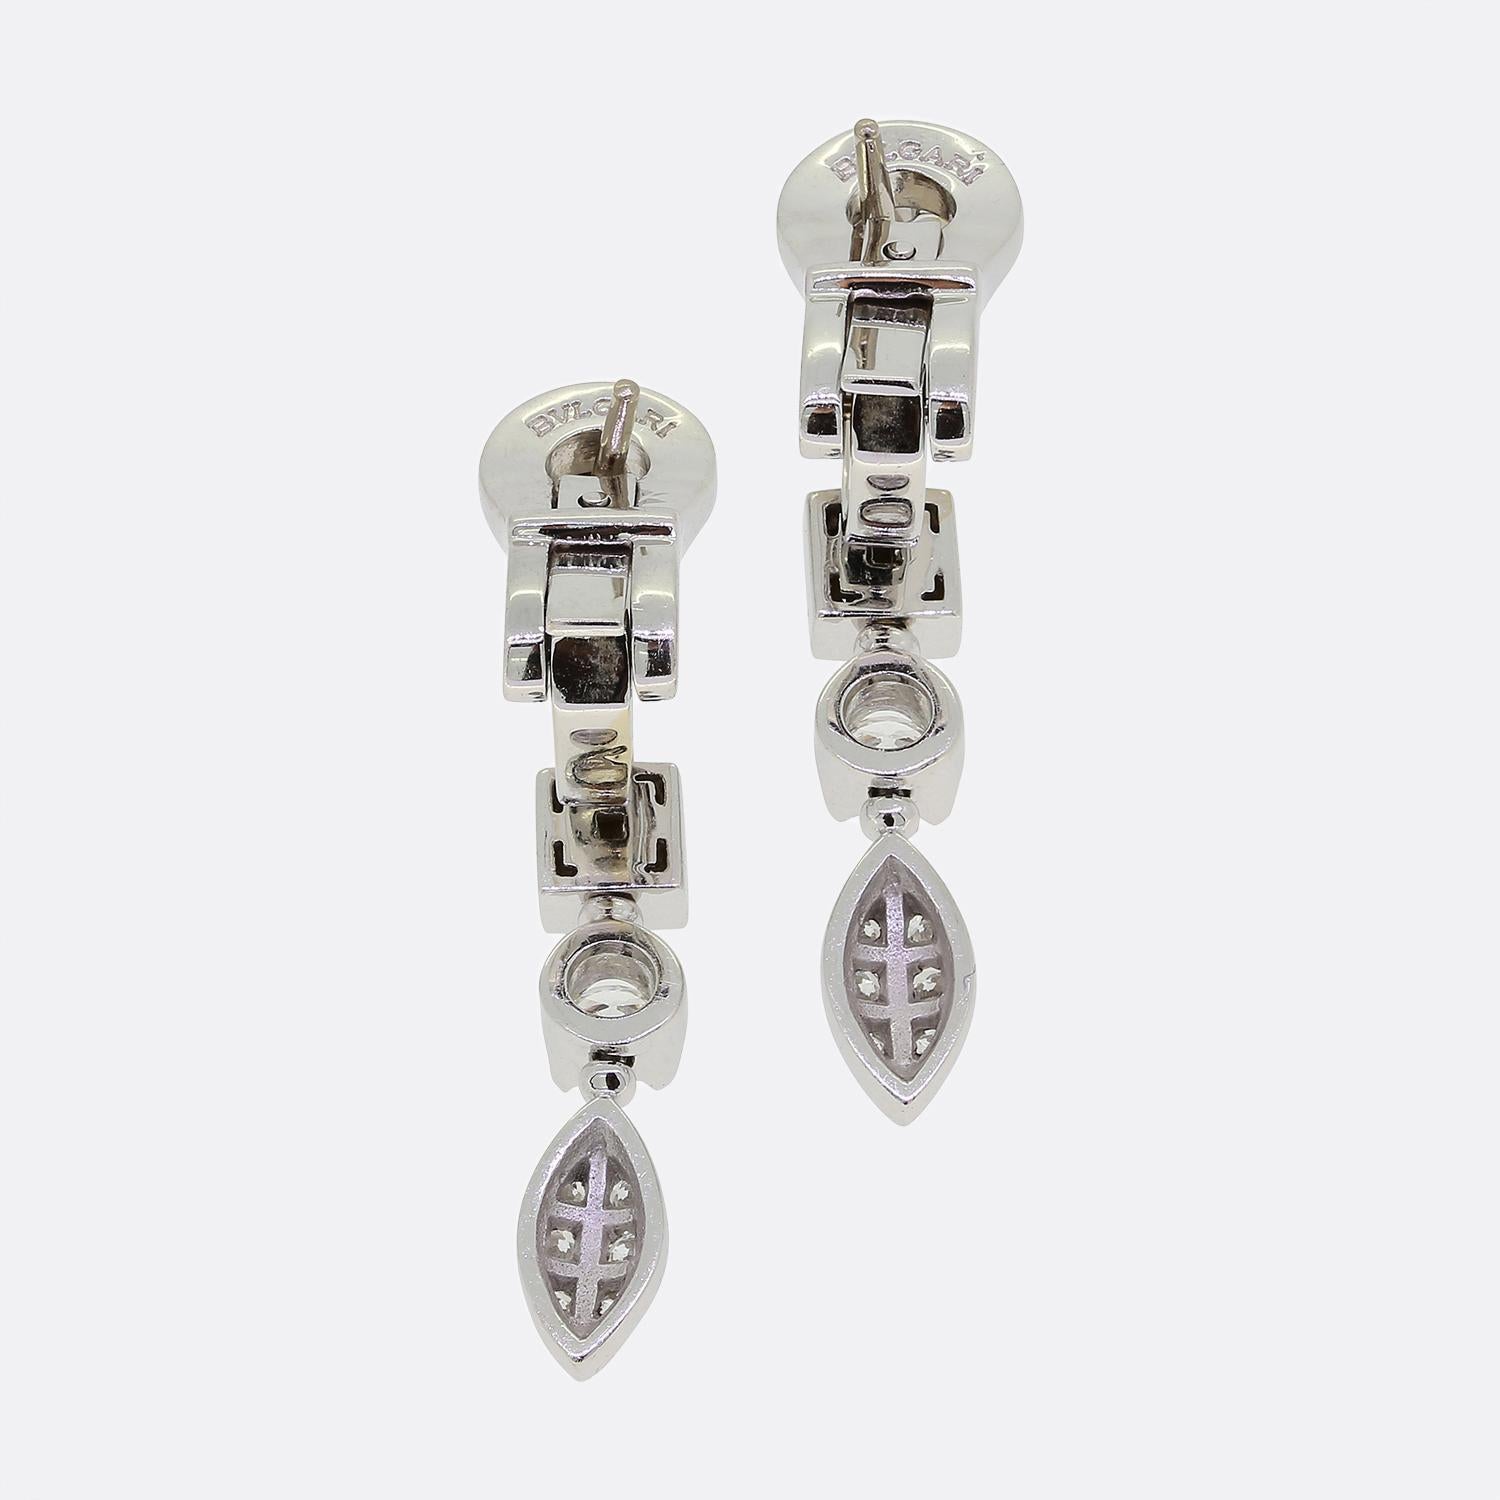 Hier haben wir ein elegantes Paar Tropfenohrringe aus dem weltbekannten italienischen Luxusschmuckhaus Bvlgari. Diese wunderschön aus 18 Karat Weißgold gefertigten Ohrringe sind Teil der Lucea-Kollektion und zeigen eine abwechselnde Reihe von